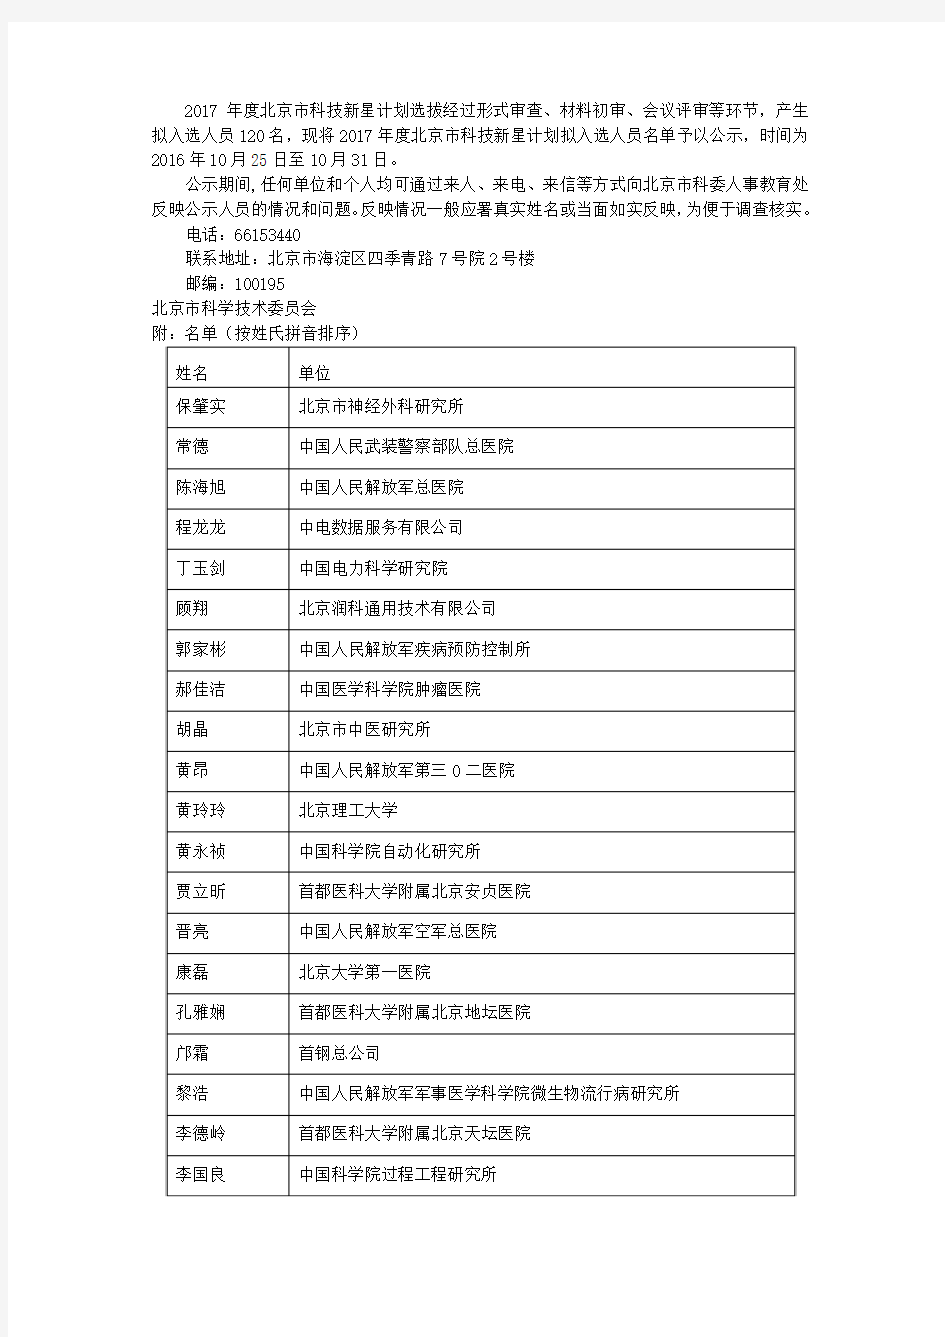 2017年度北京市科技新星计划拟入选人员名单公示